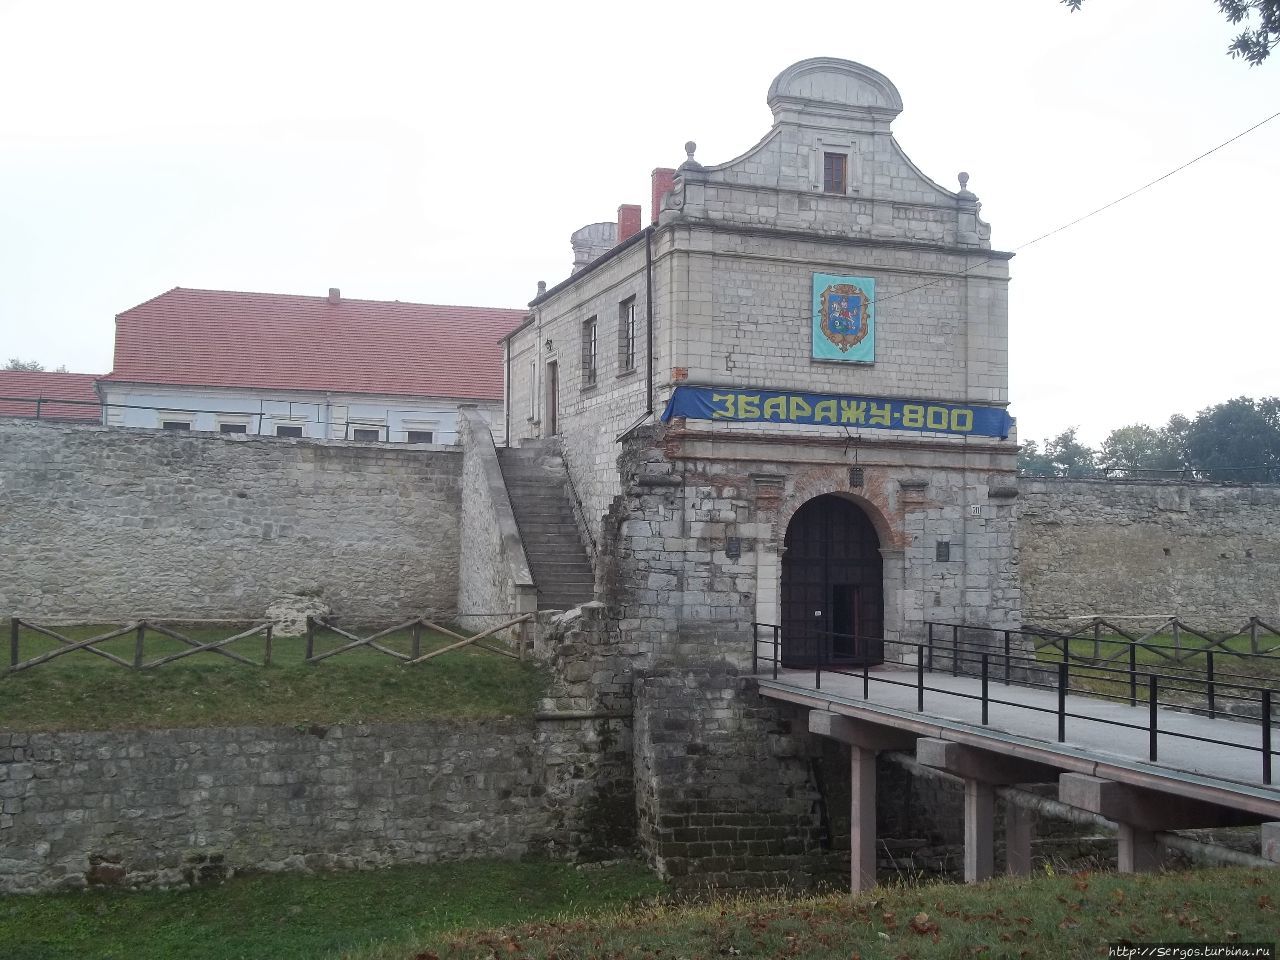 Замок выдержал осаду казаков Б.Хмельницкого, нр не устоял перед гайдамаками Россия